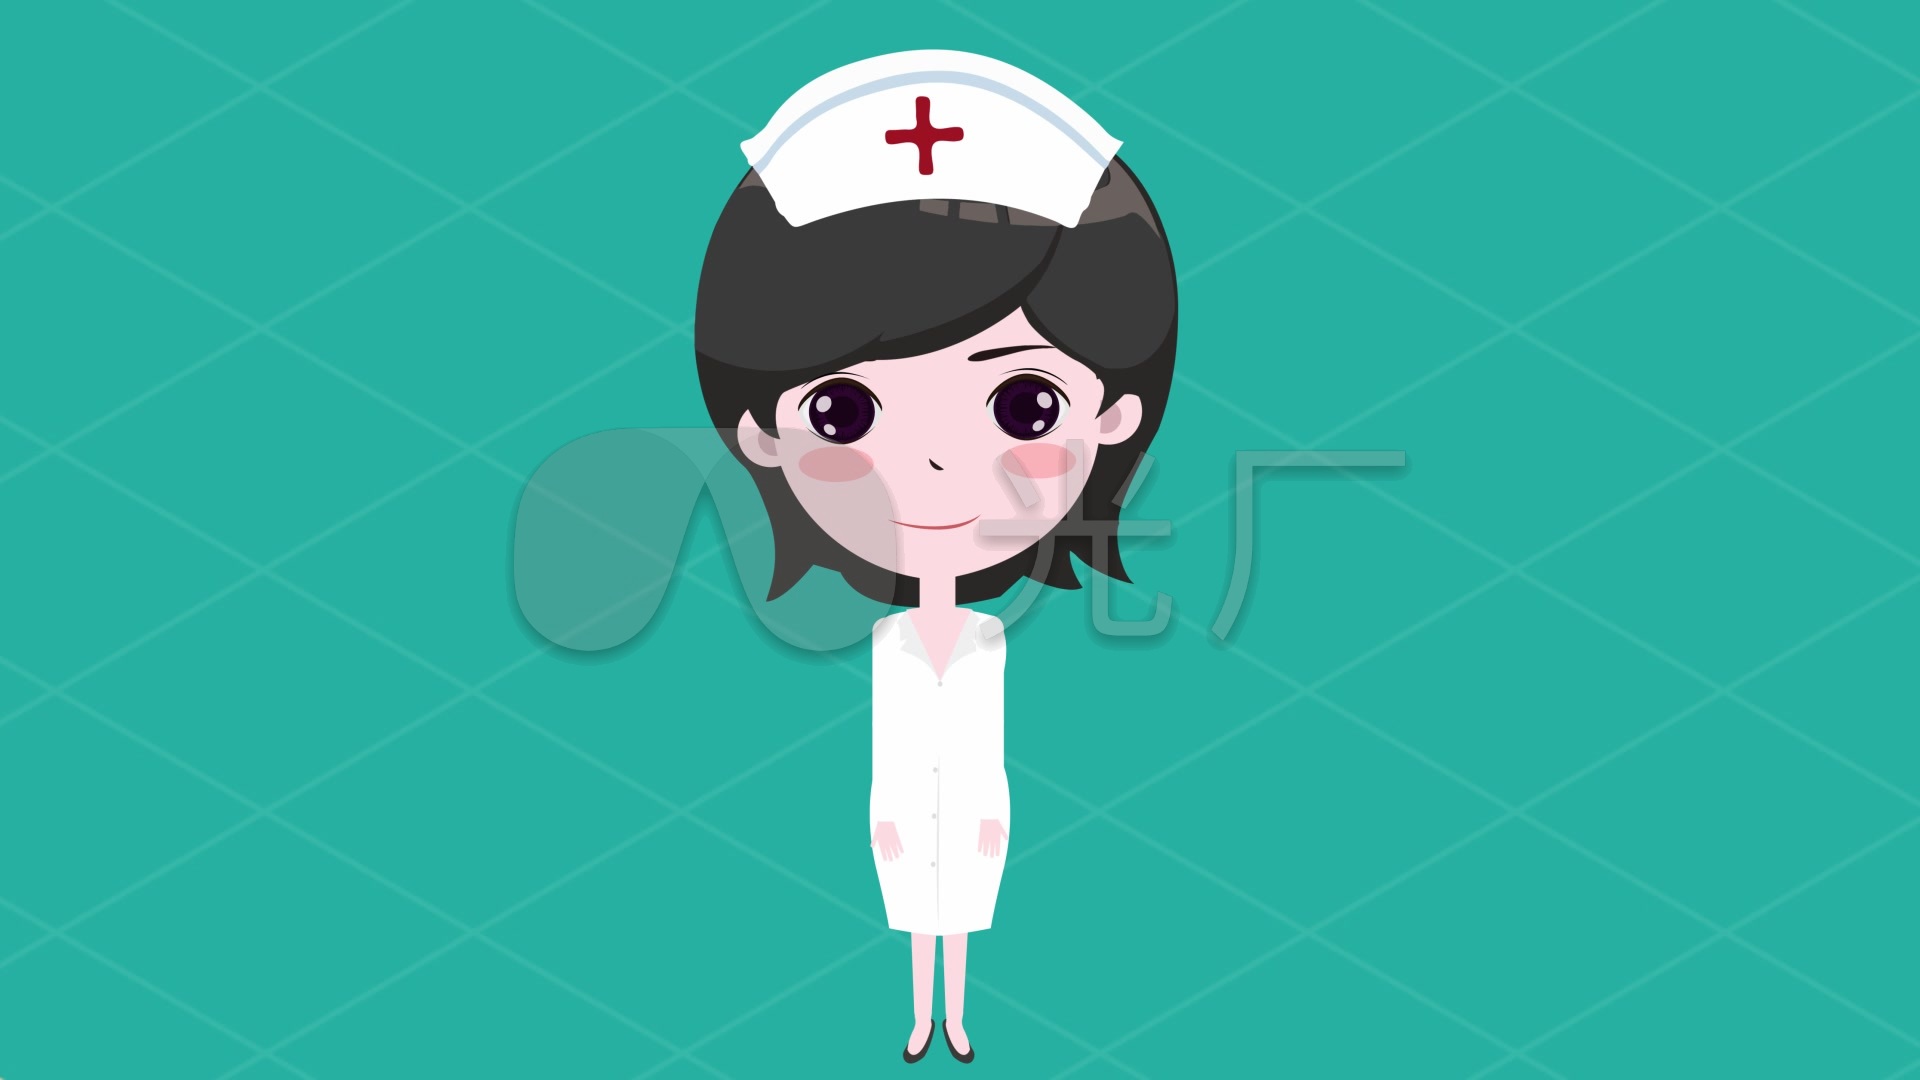 《海贼王》护士姐姐 娜美桑 动漫女护士头像-1-6TU